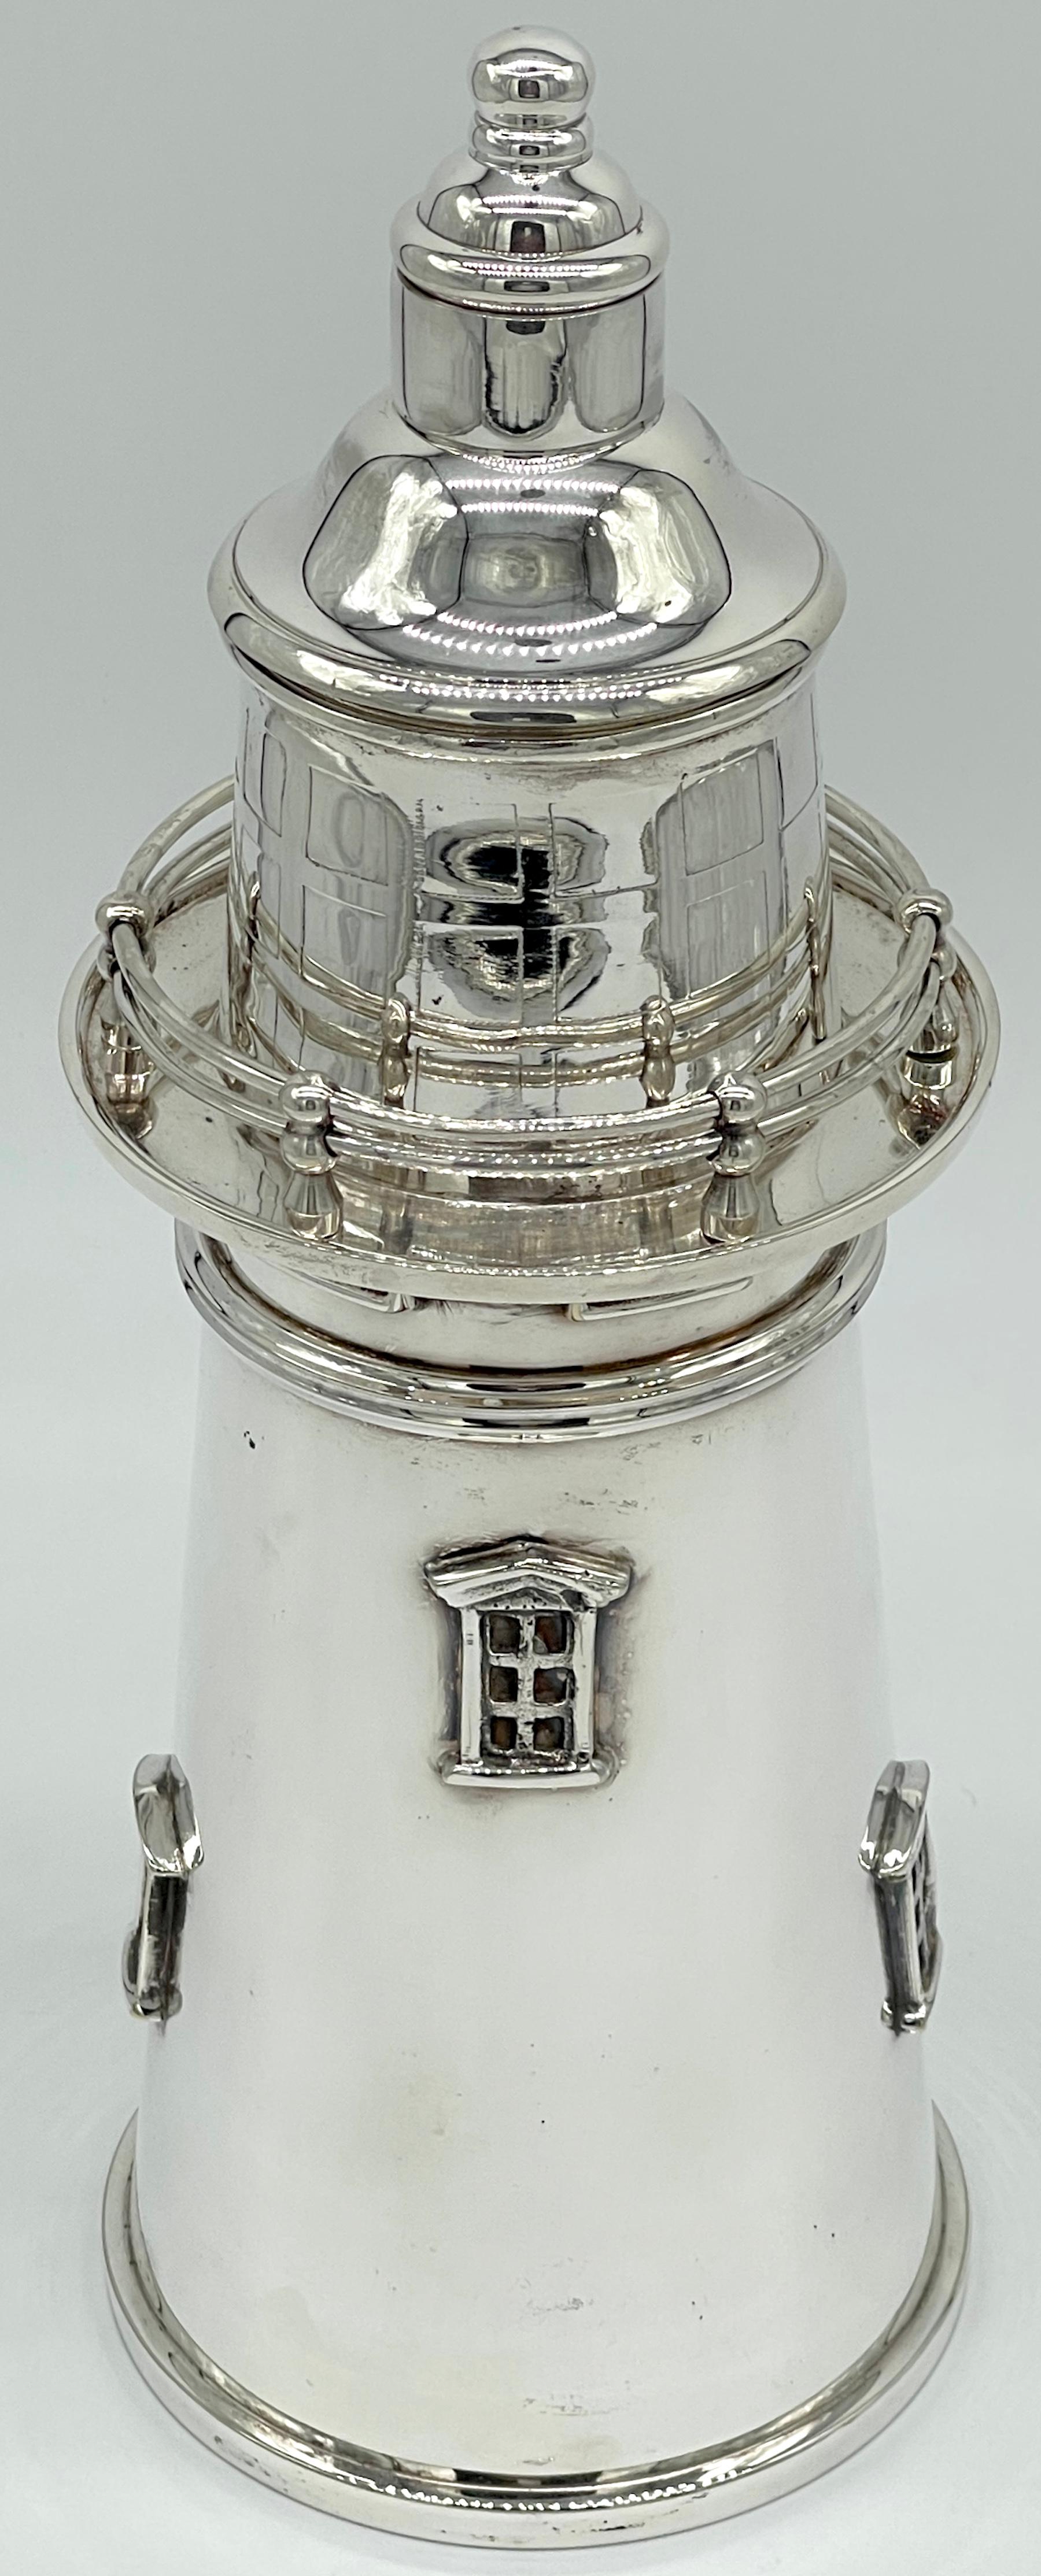 Shaker à cocktail argenté en forme de phare Style James Deakin & Sons
Angleterre, 20e siècle 

Magnifique shaker en argent plaqué en forme de phare, réalisé dans le style emblématique de James Deakin & Sons, dans l'Angleterre du XXe siècle. Cette